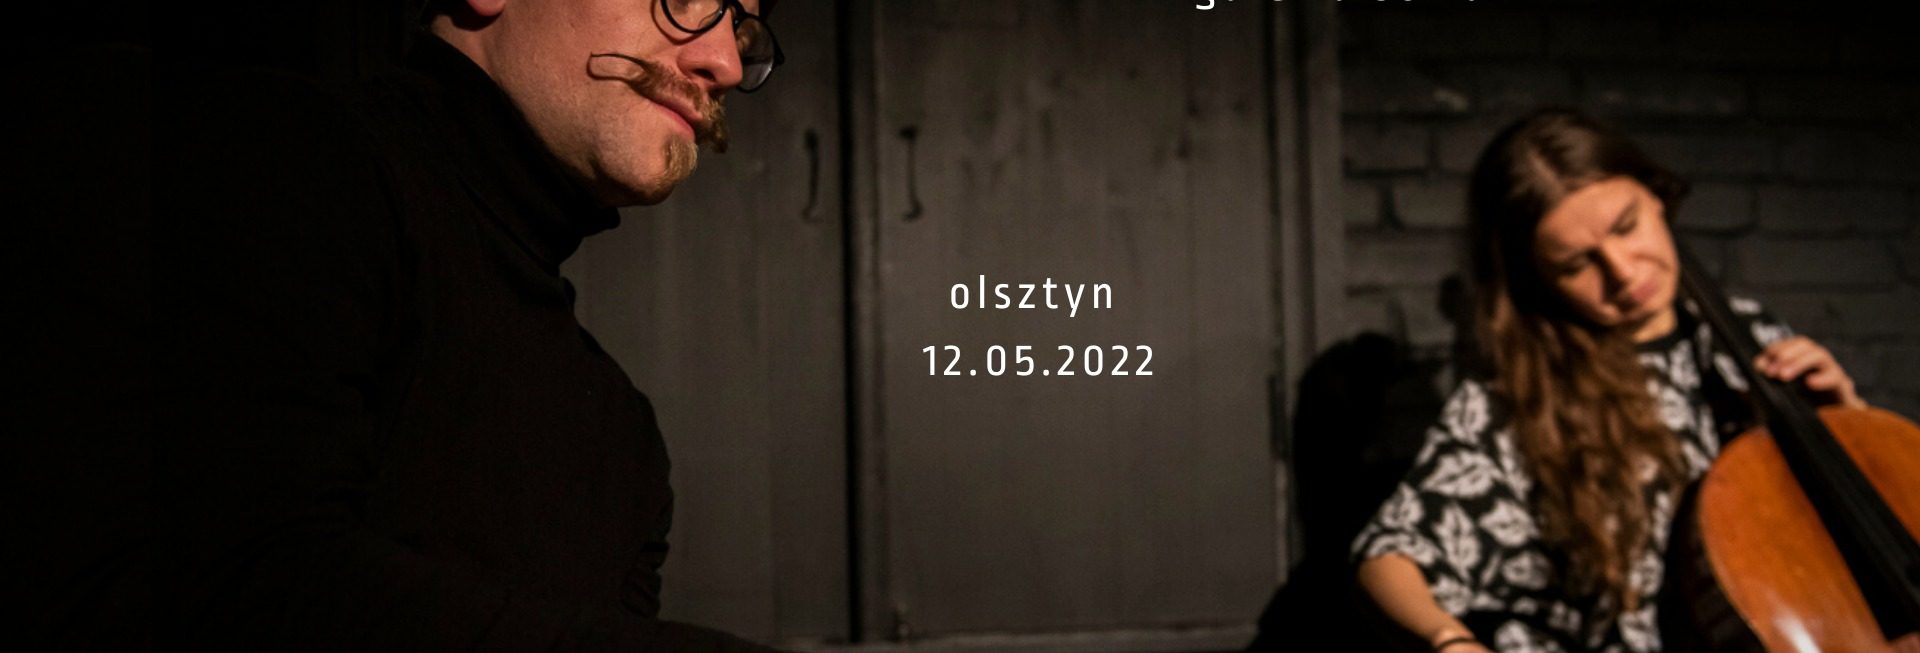 Plakat graficzny zapraszający do Olsztyna na koncert Romana Wróblewskiego & Weroniki Kulpa Olsztyn 2022.